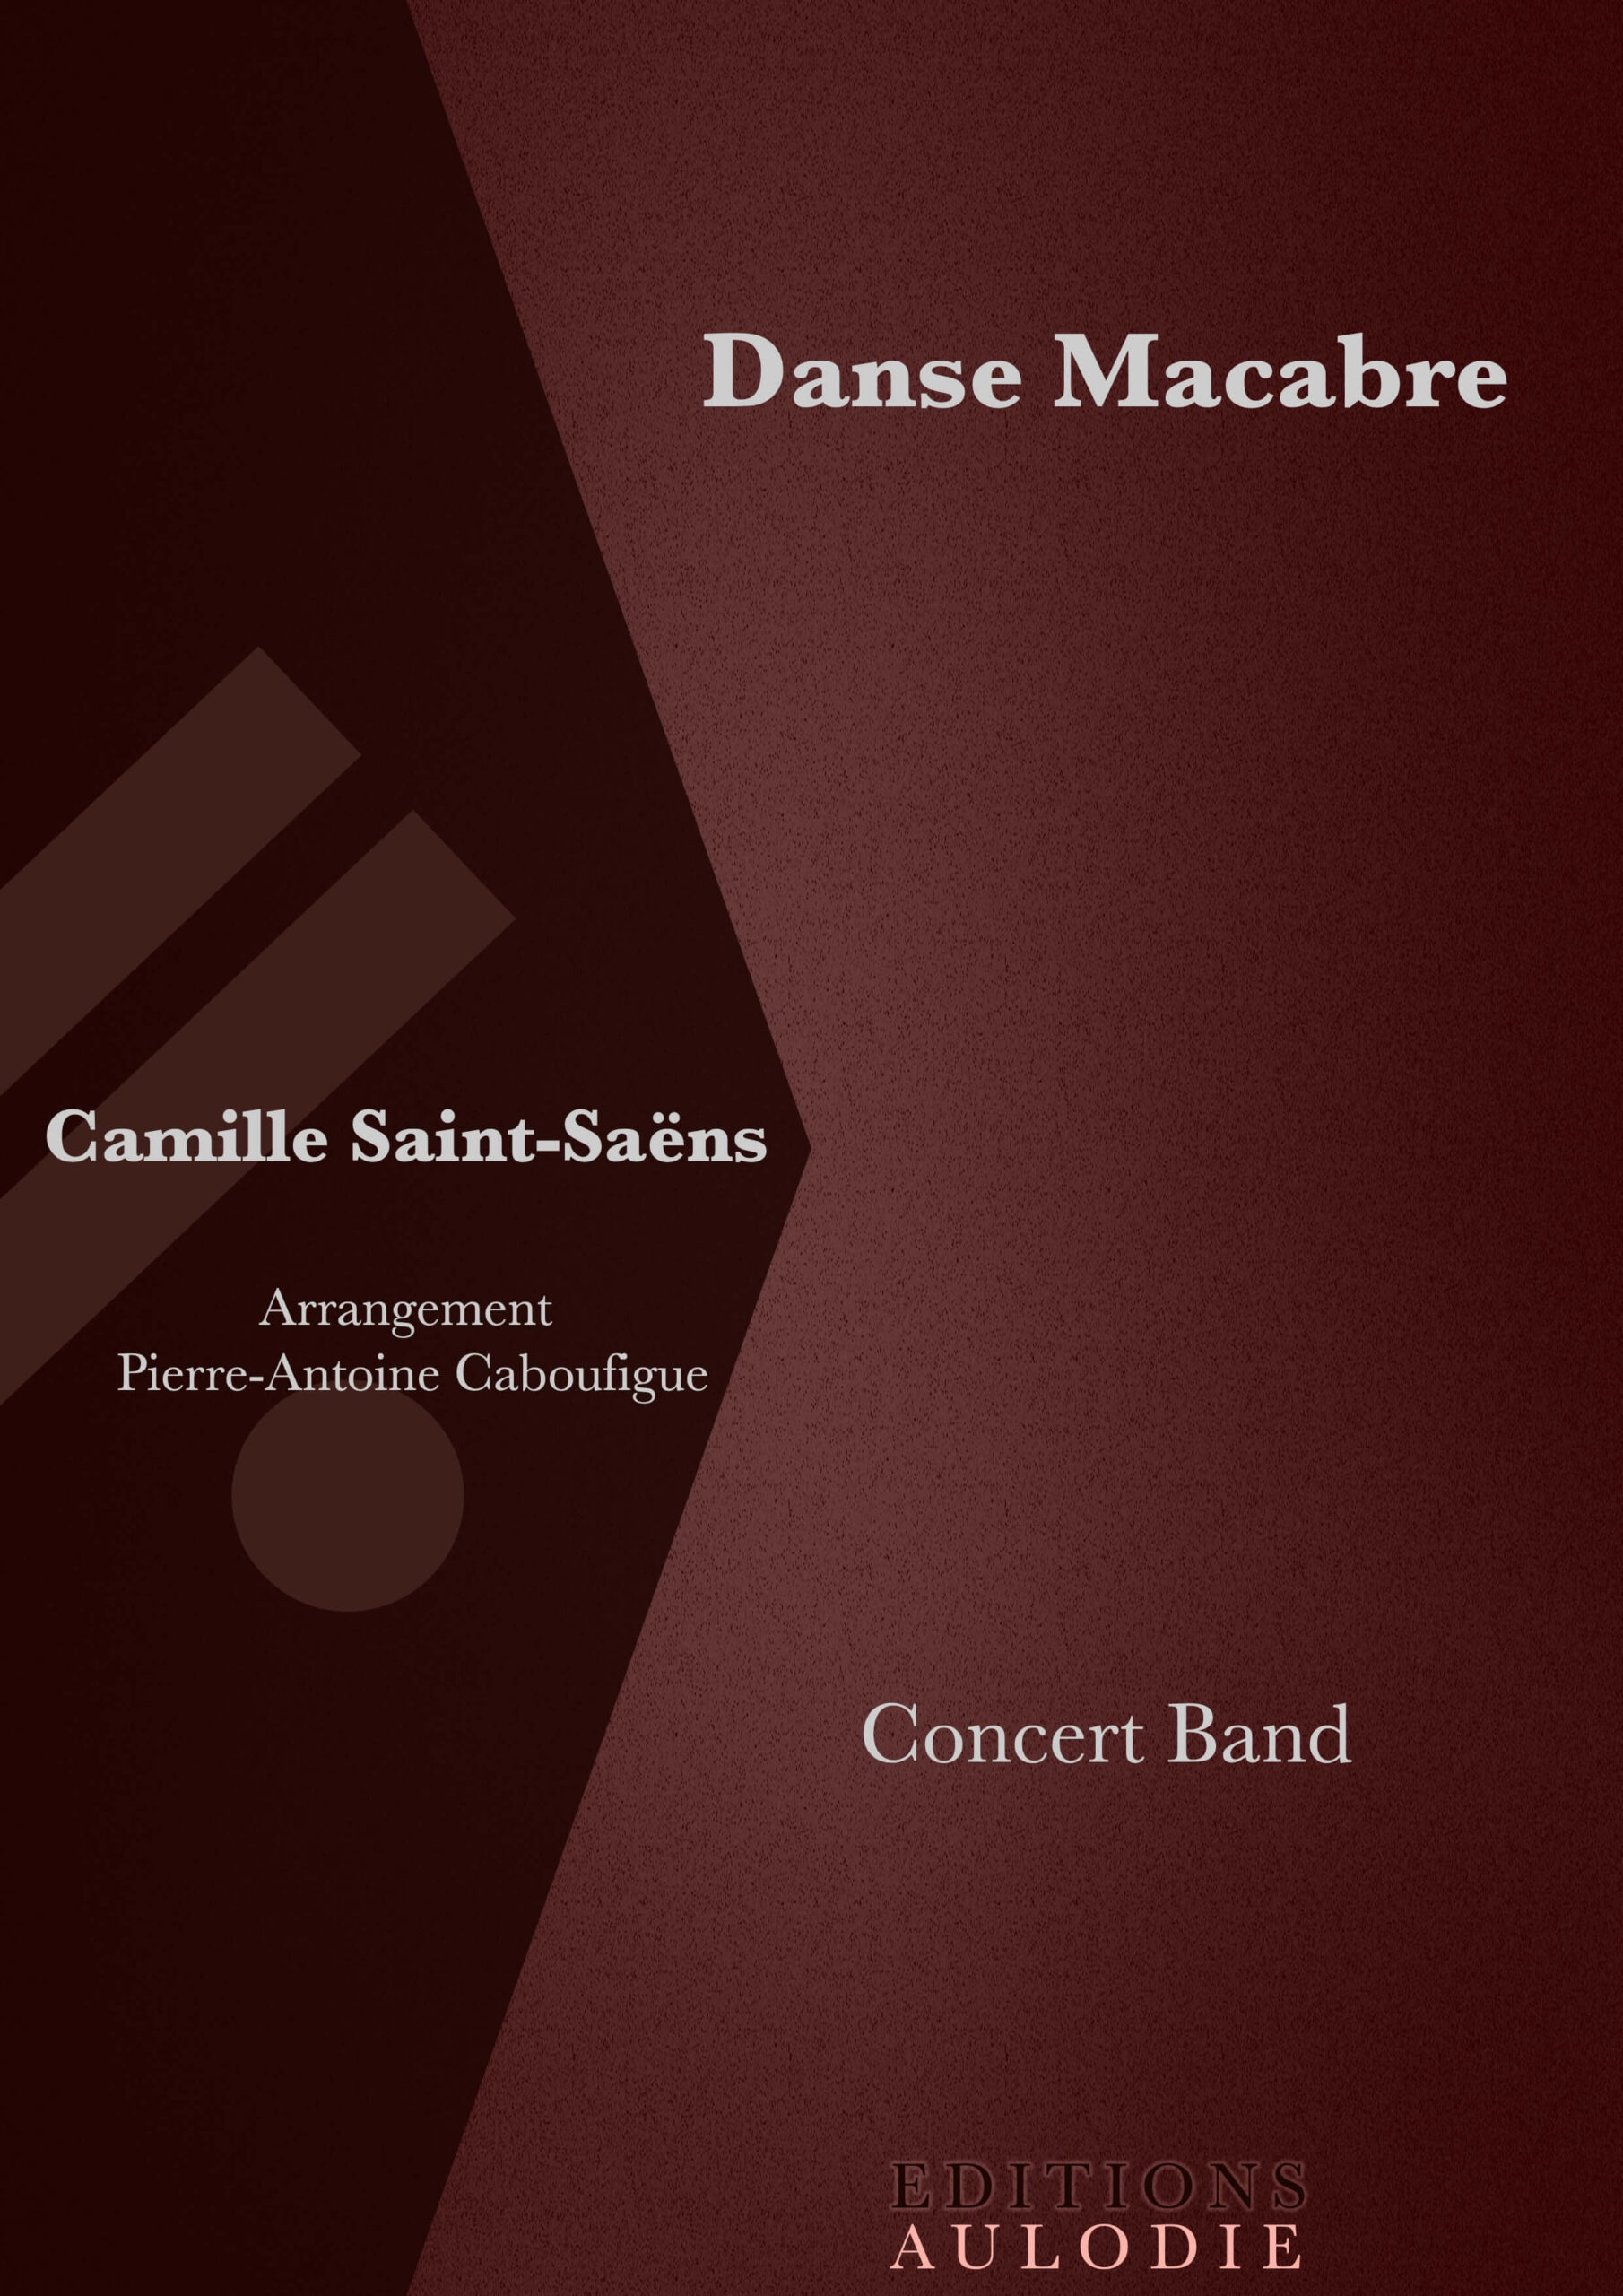 EA01017-Danse_Macabre-Camille_Saint-Saens-Concert_Band